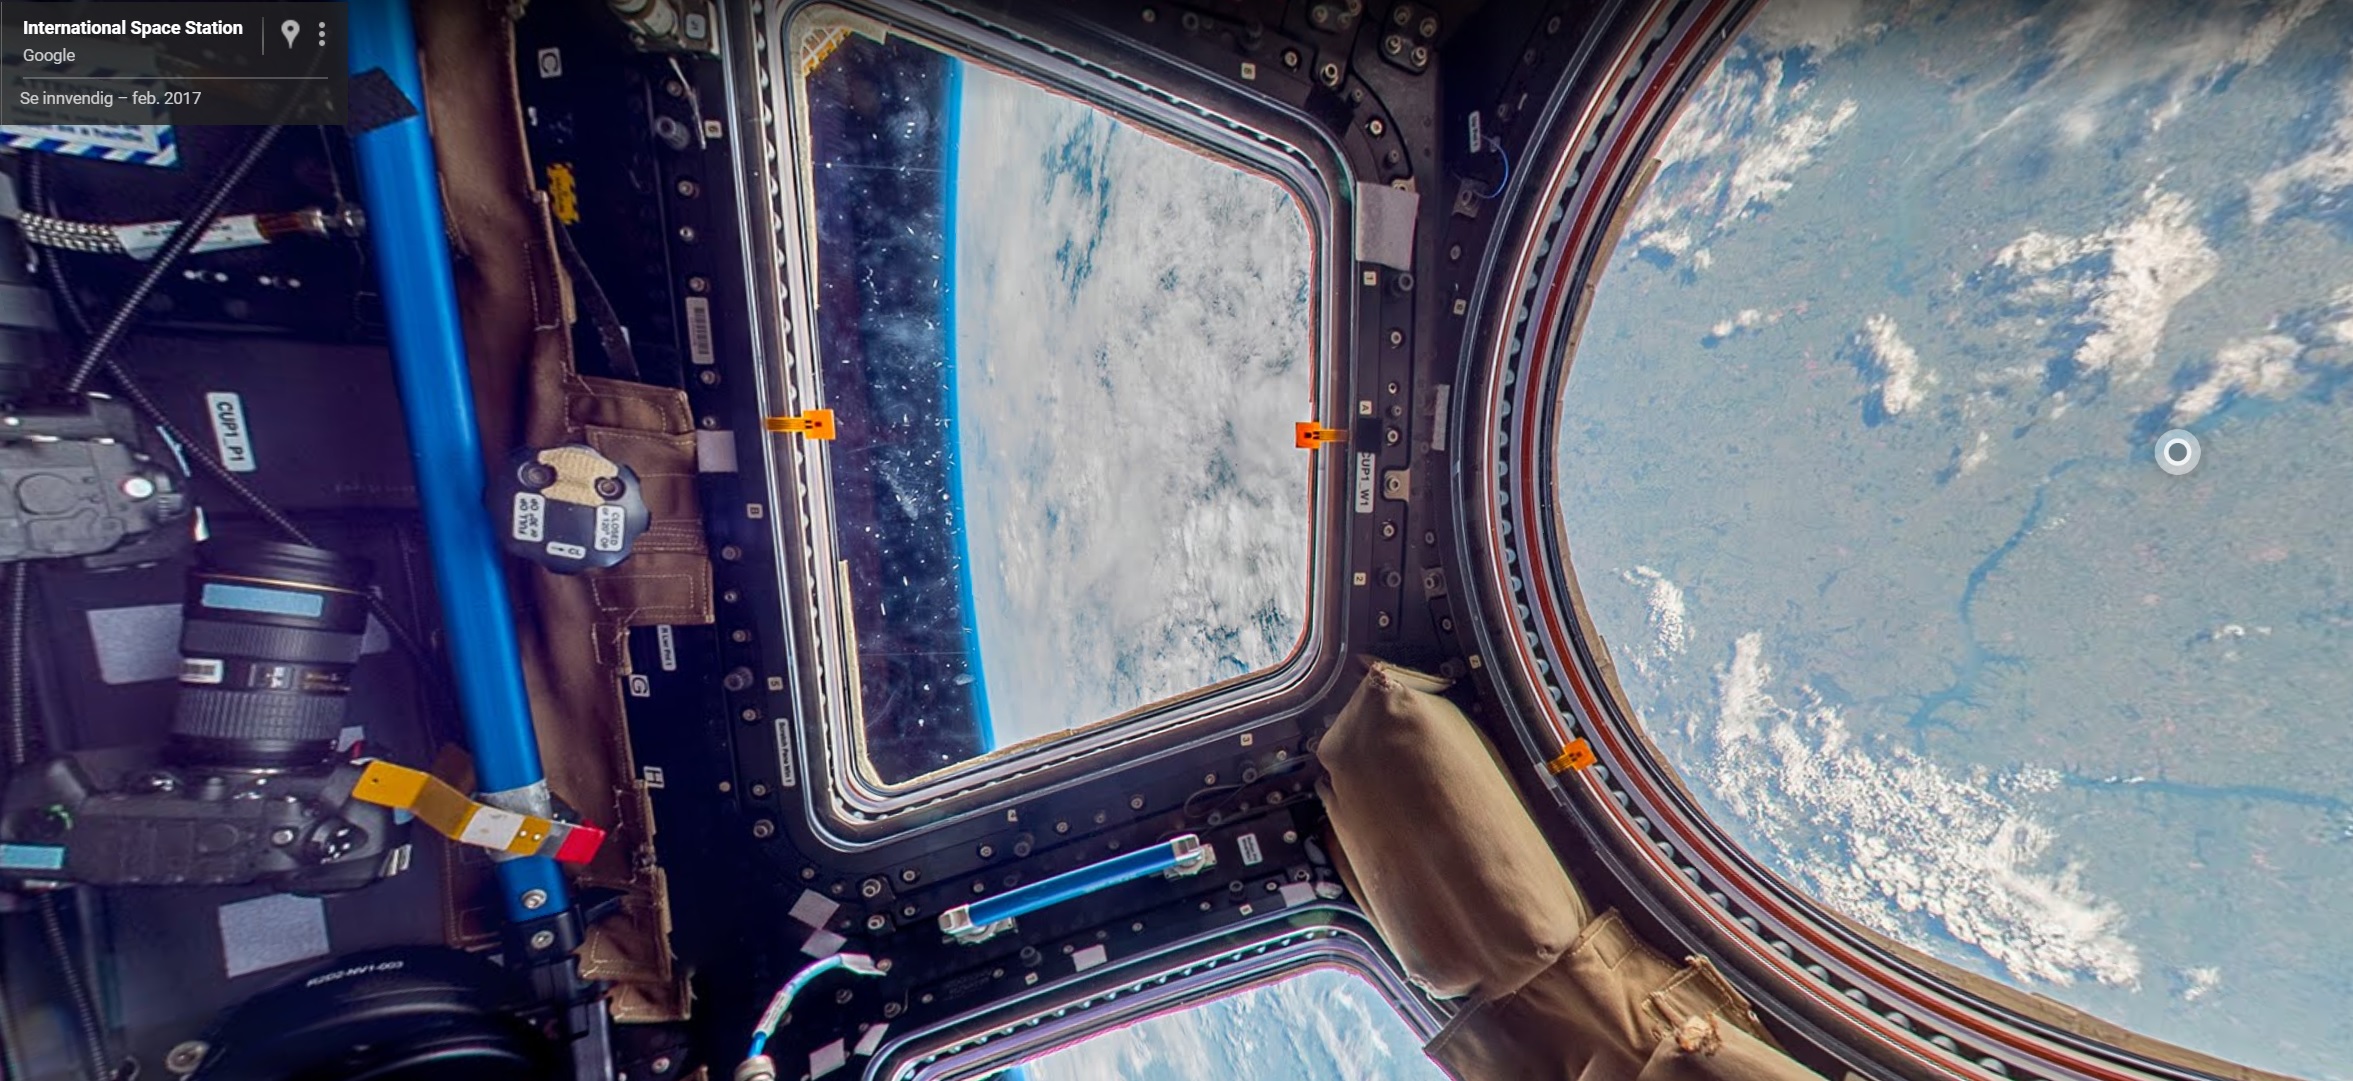 Bli med opp til den internasjonale romstasjonen med Google Street View.